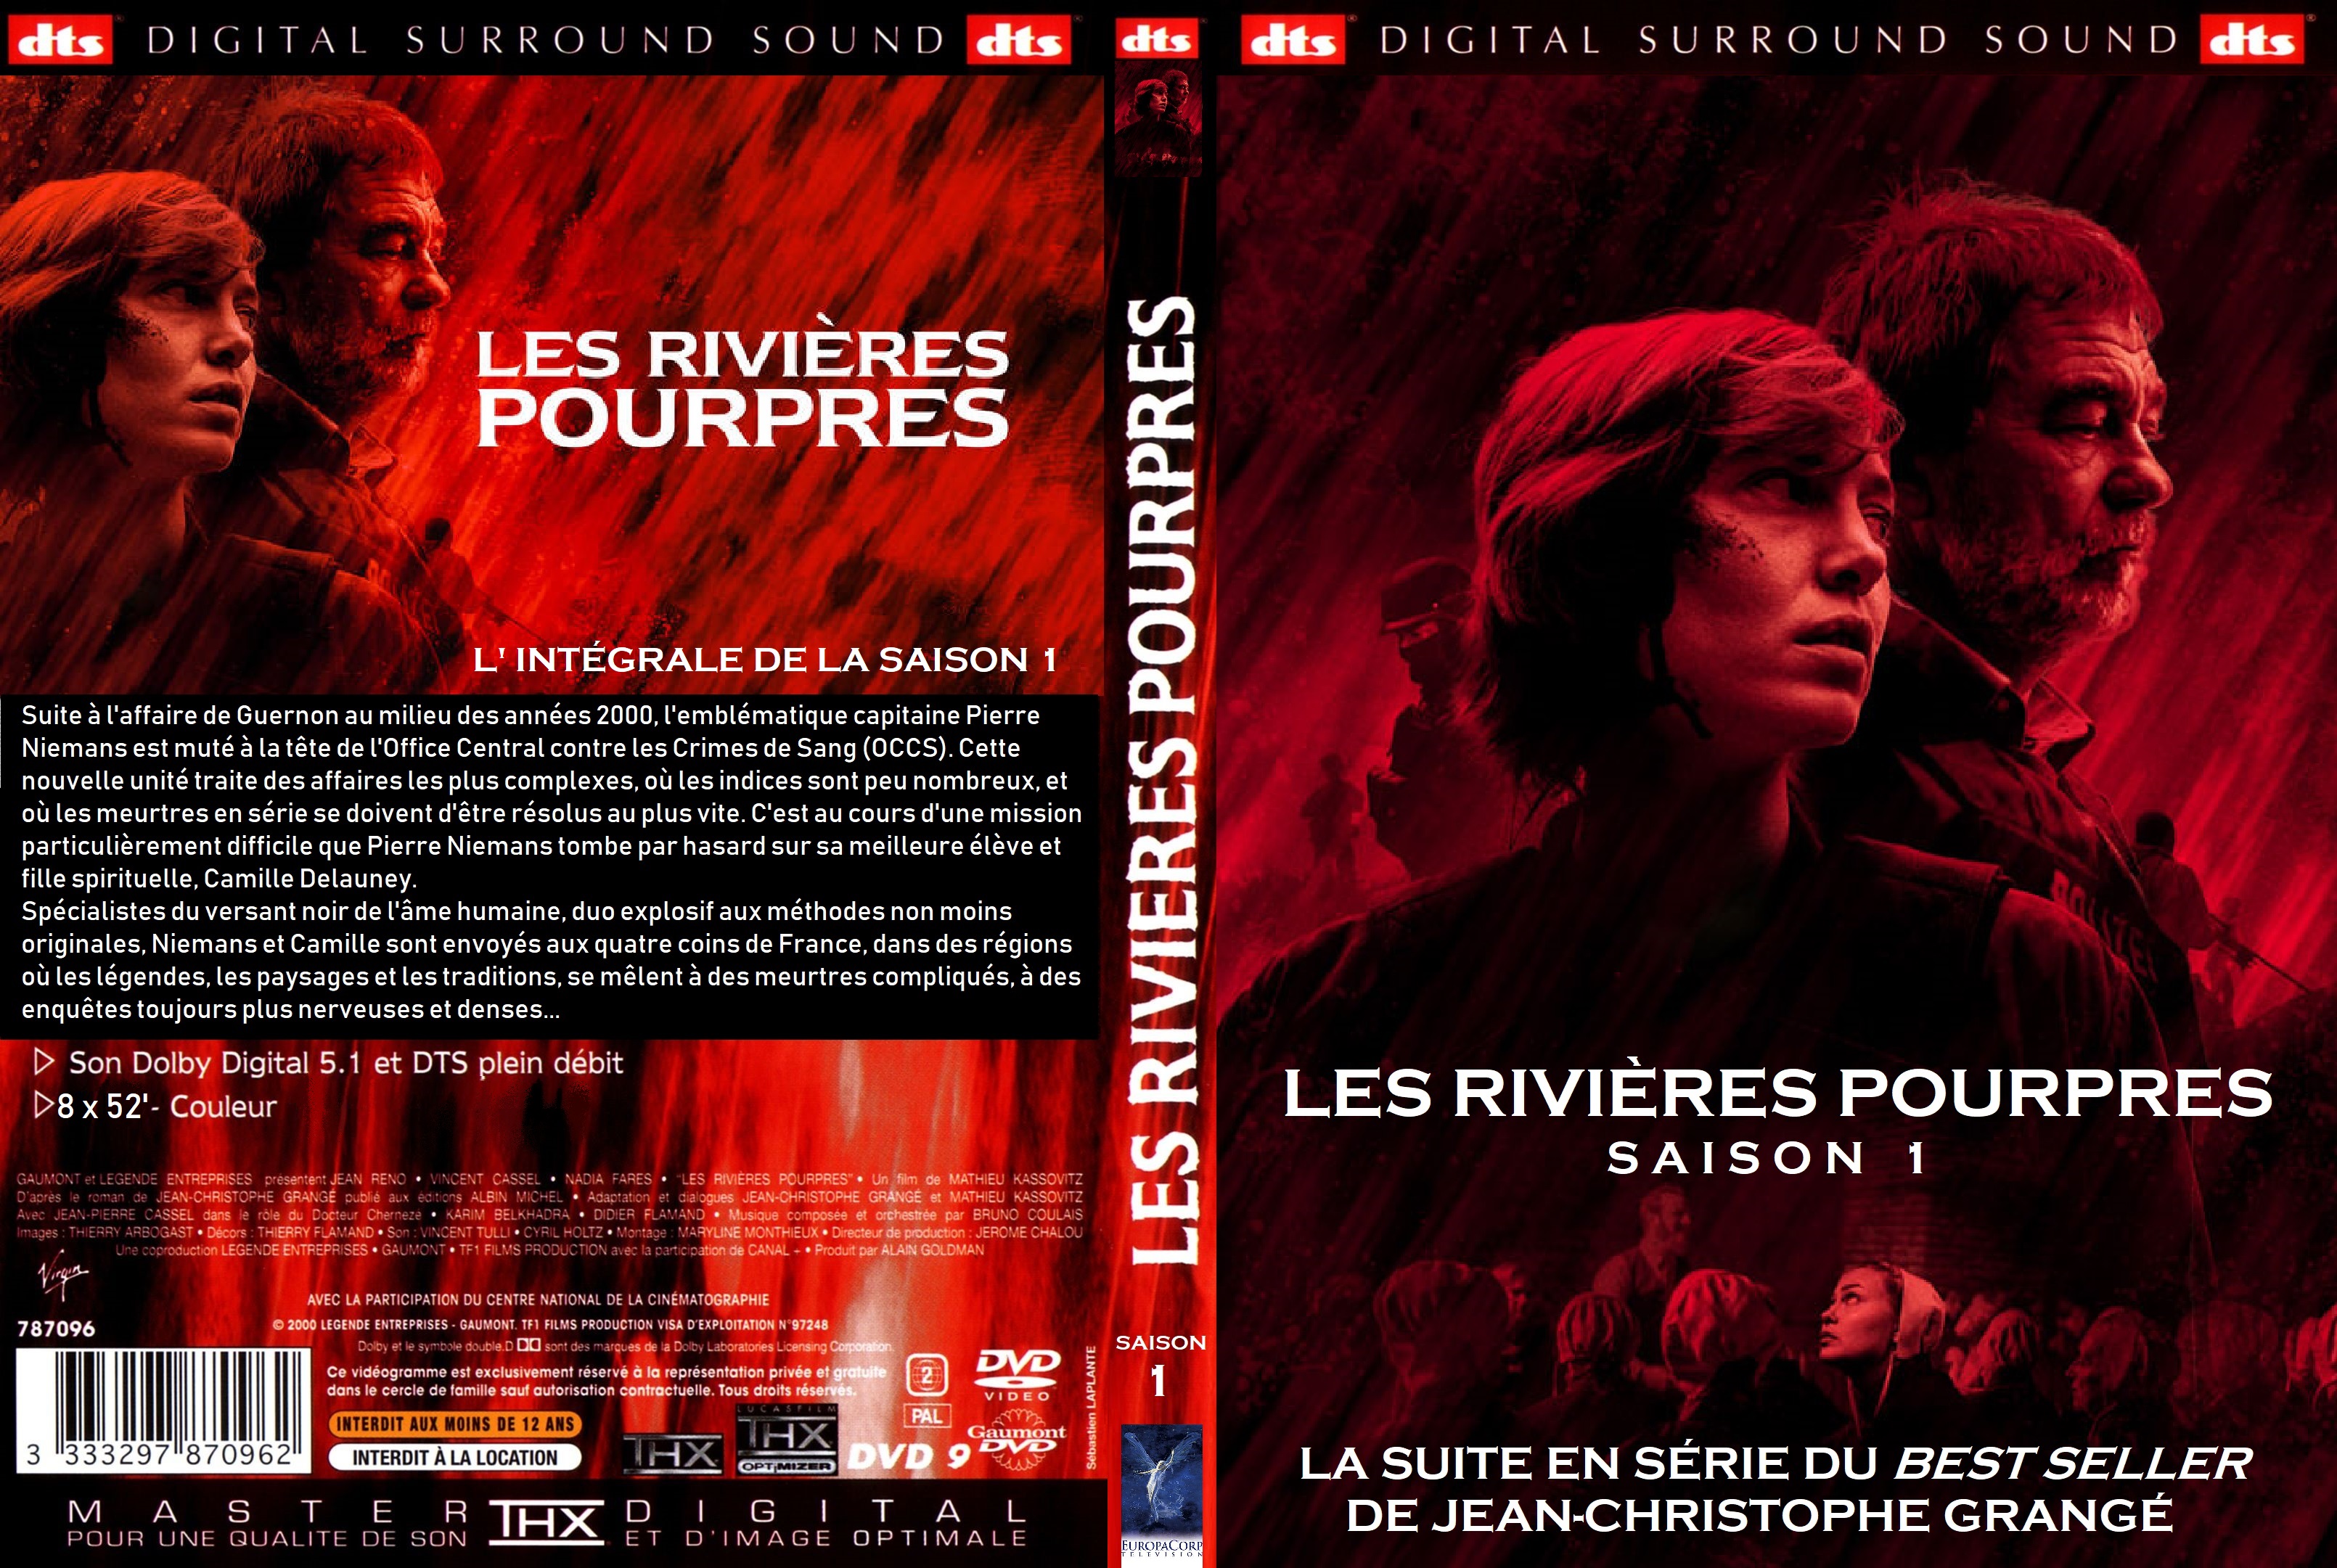 Jaquette DVD Les rivieres pourpres saison 1 custom v2